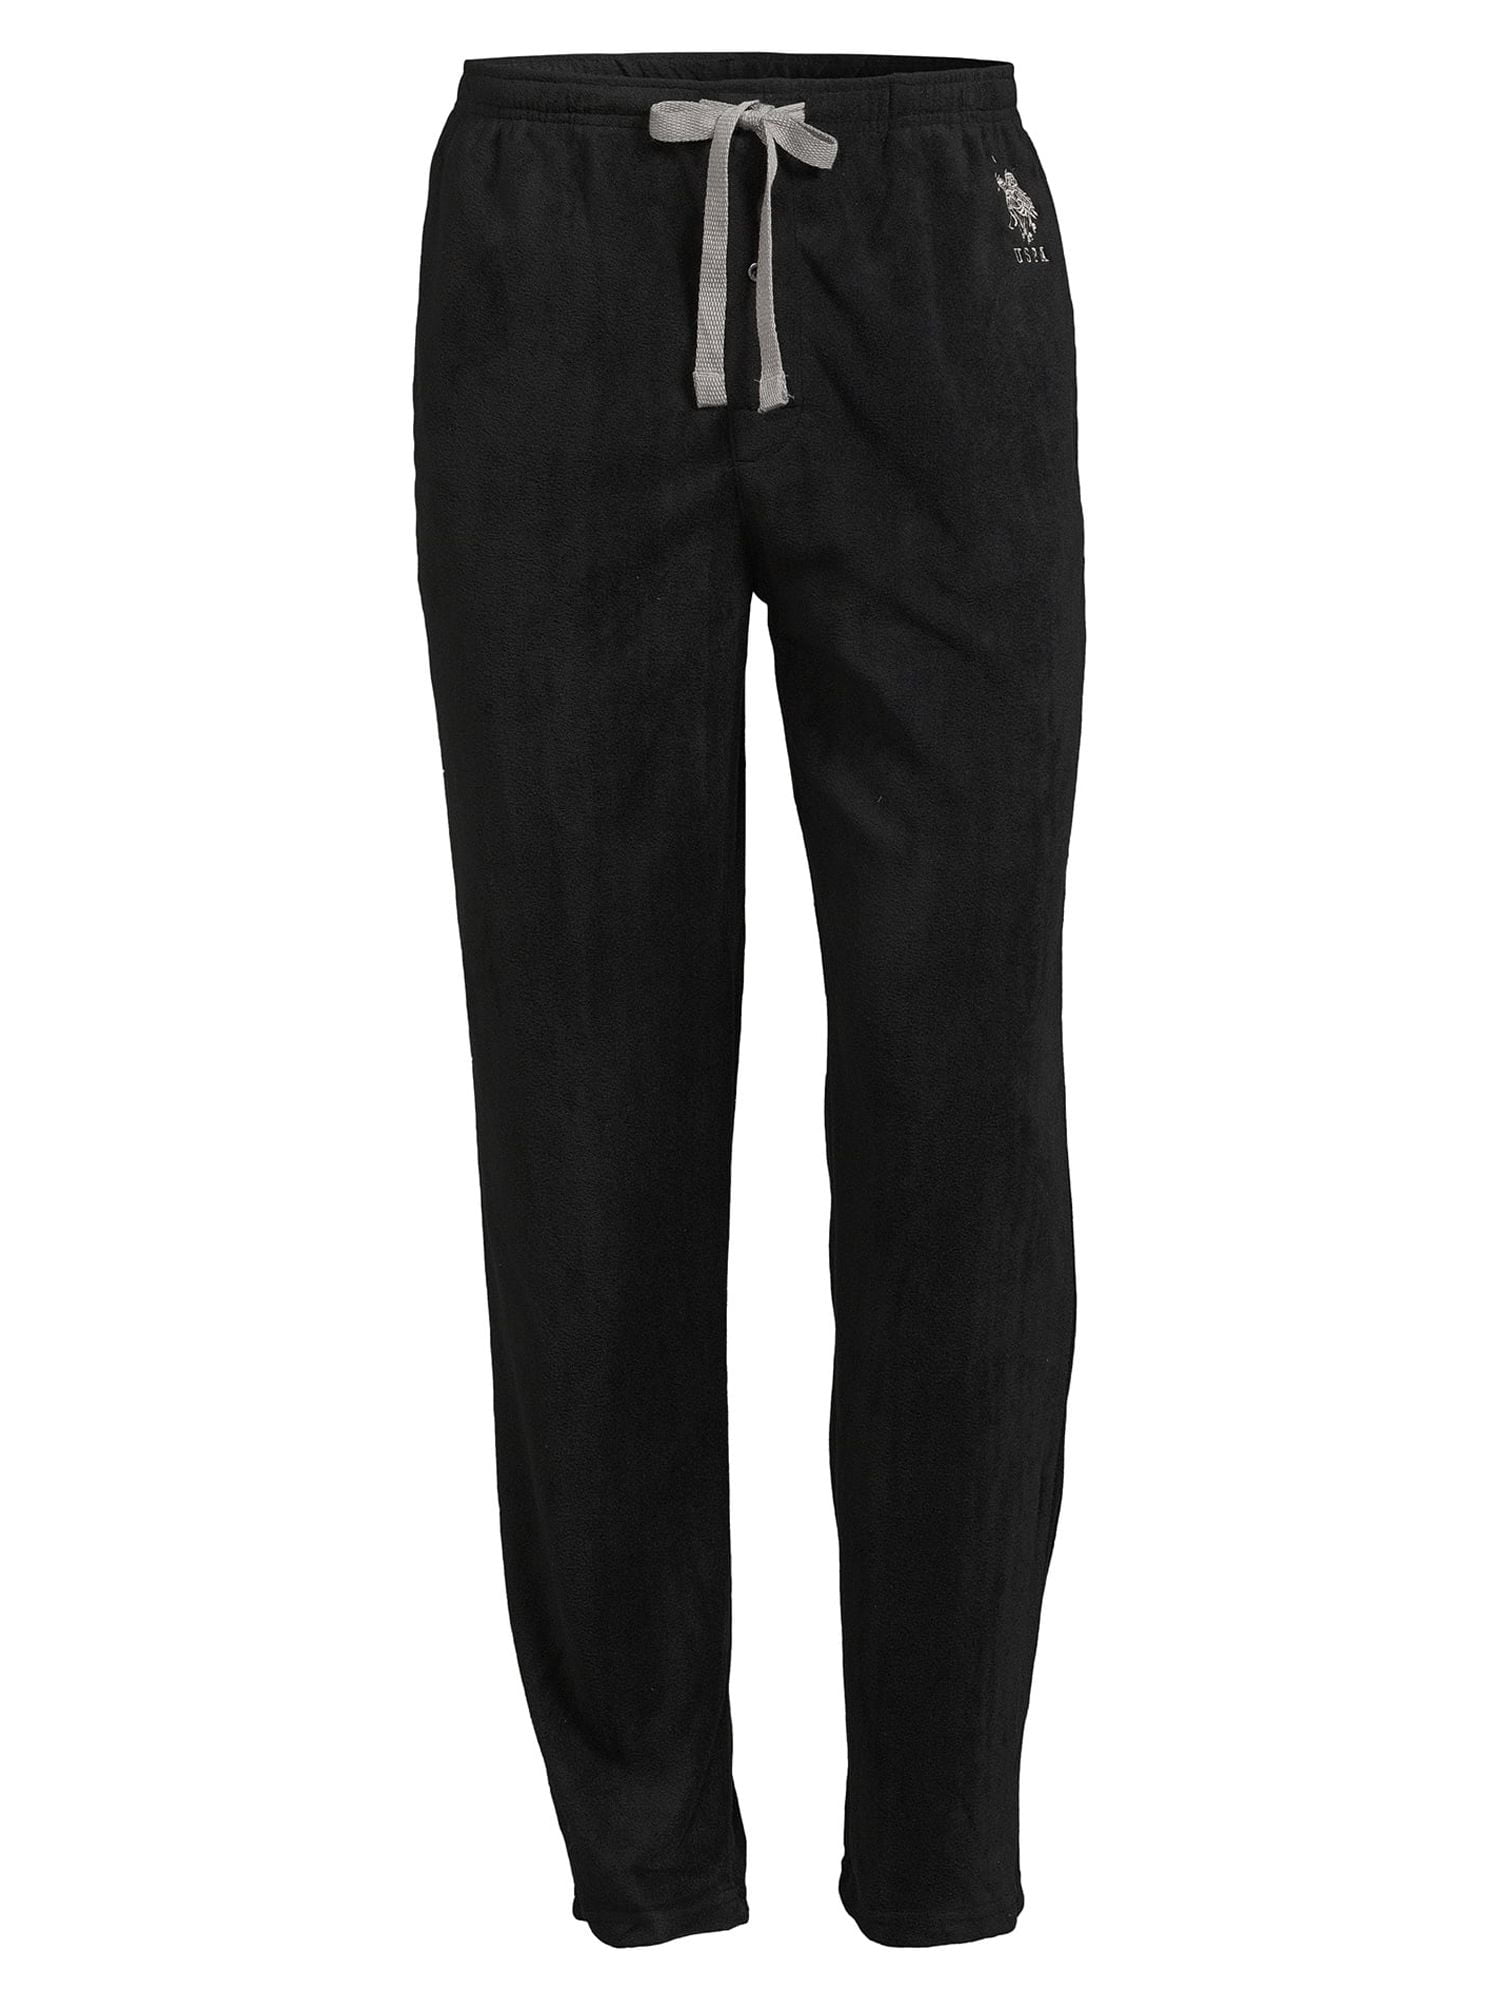 U S Polo Assn Men s Microfleece Lounge Pajama Pants Sizes S 3XL